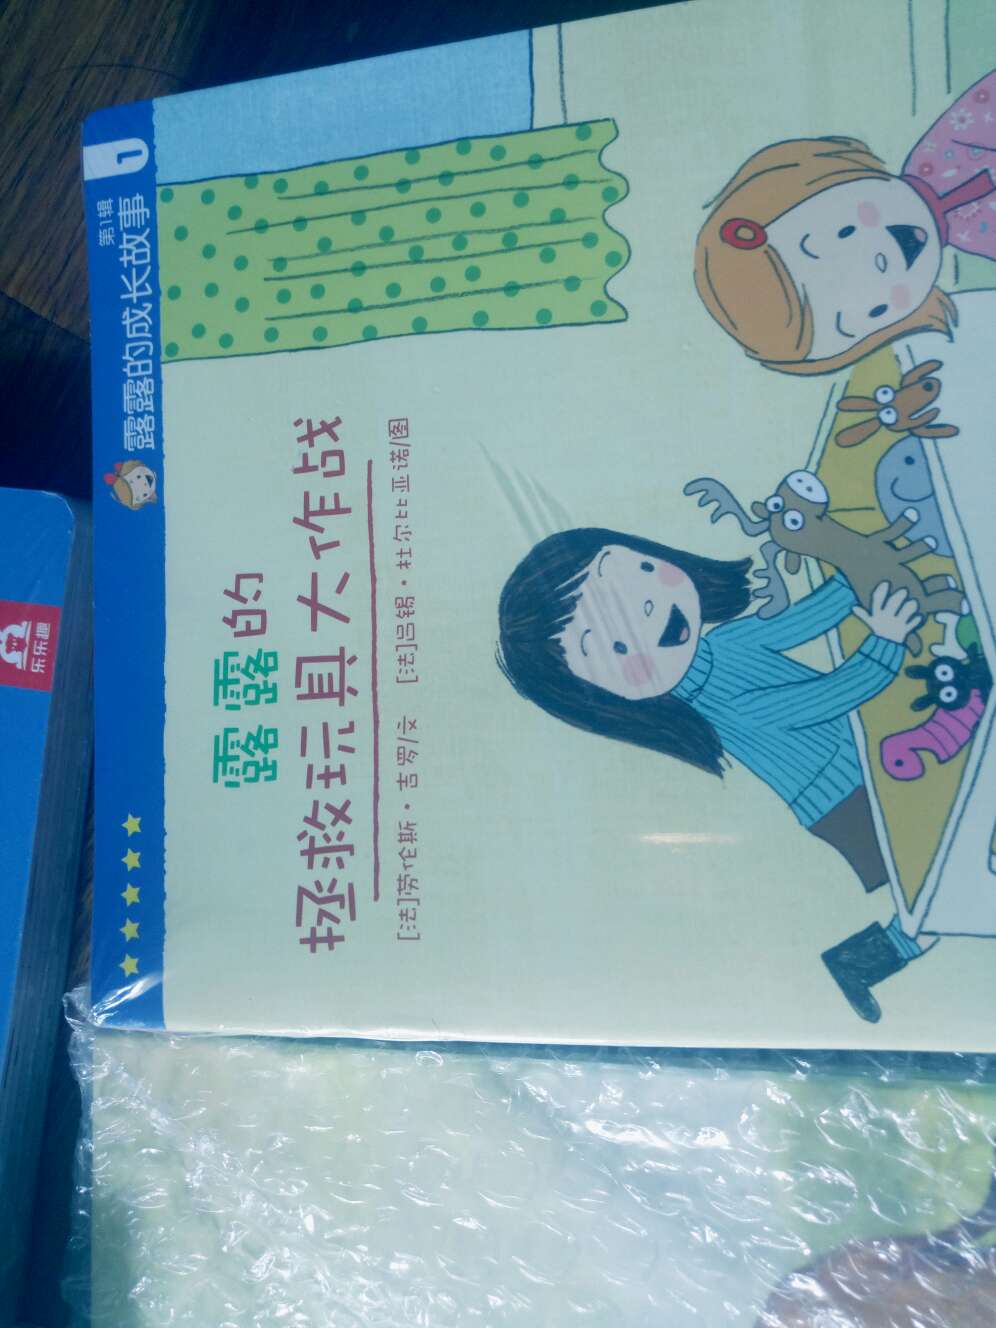 书内容还可以，觉得扫描听读觉得就一中国人说外语，很多都觉得怪怪的，不知是英式发音还是美式的了，我表示不懂。娃娃更听起累。总体来说还是贵了点